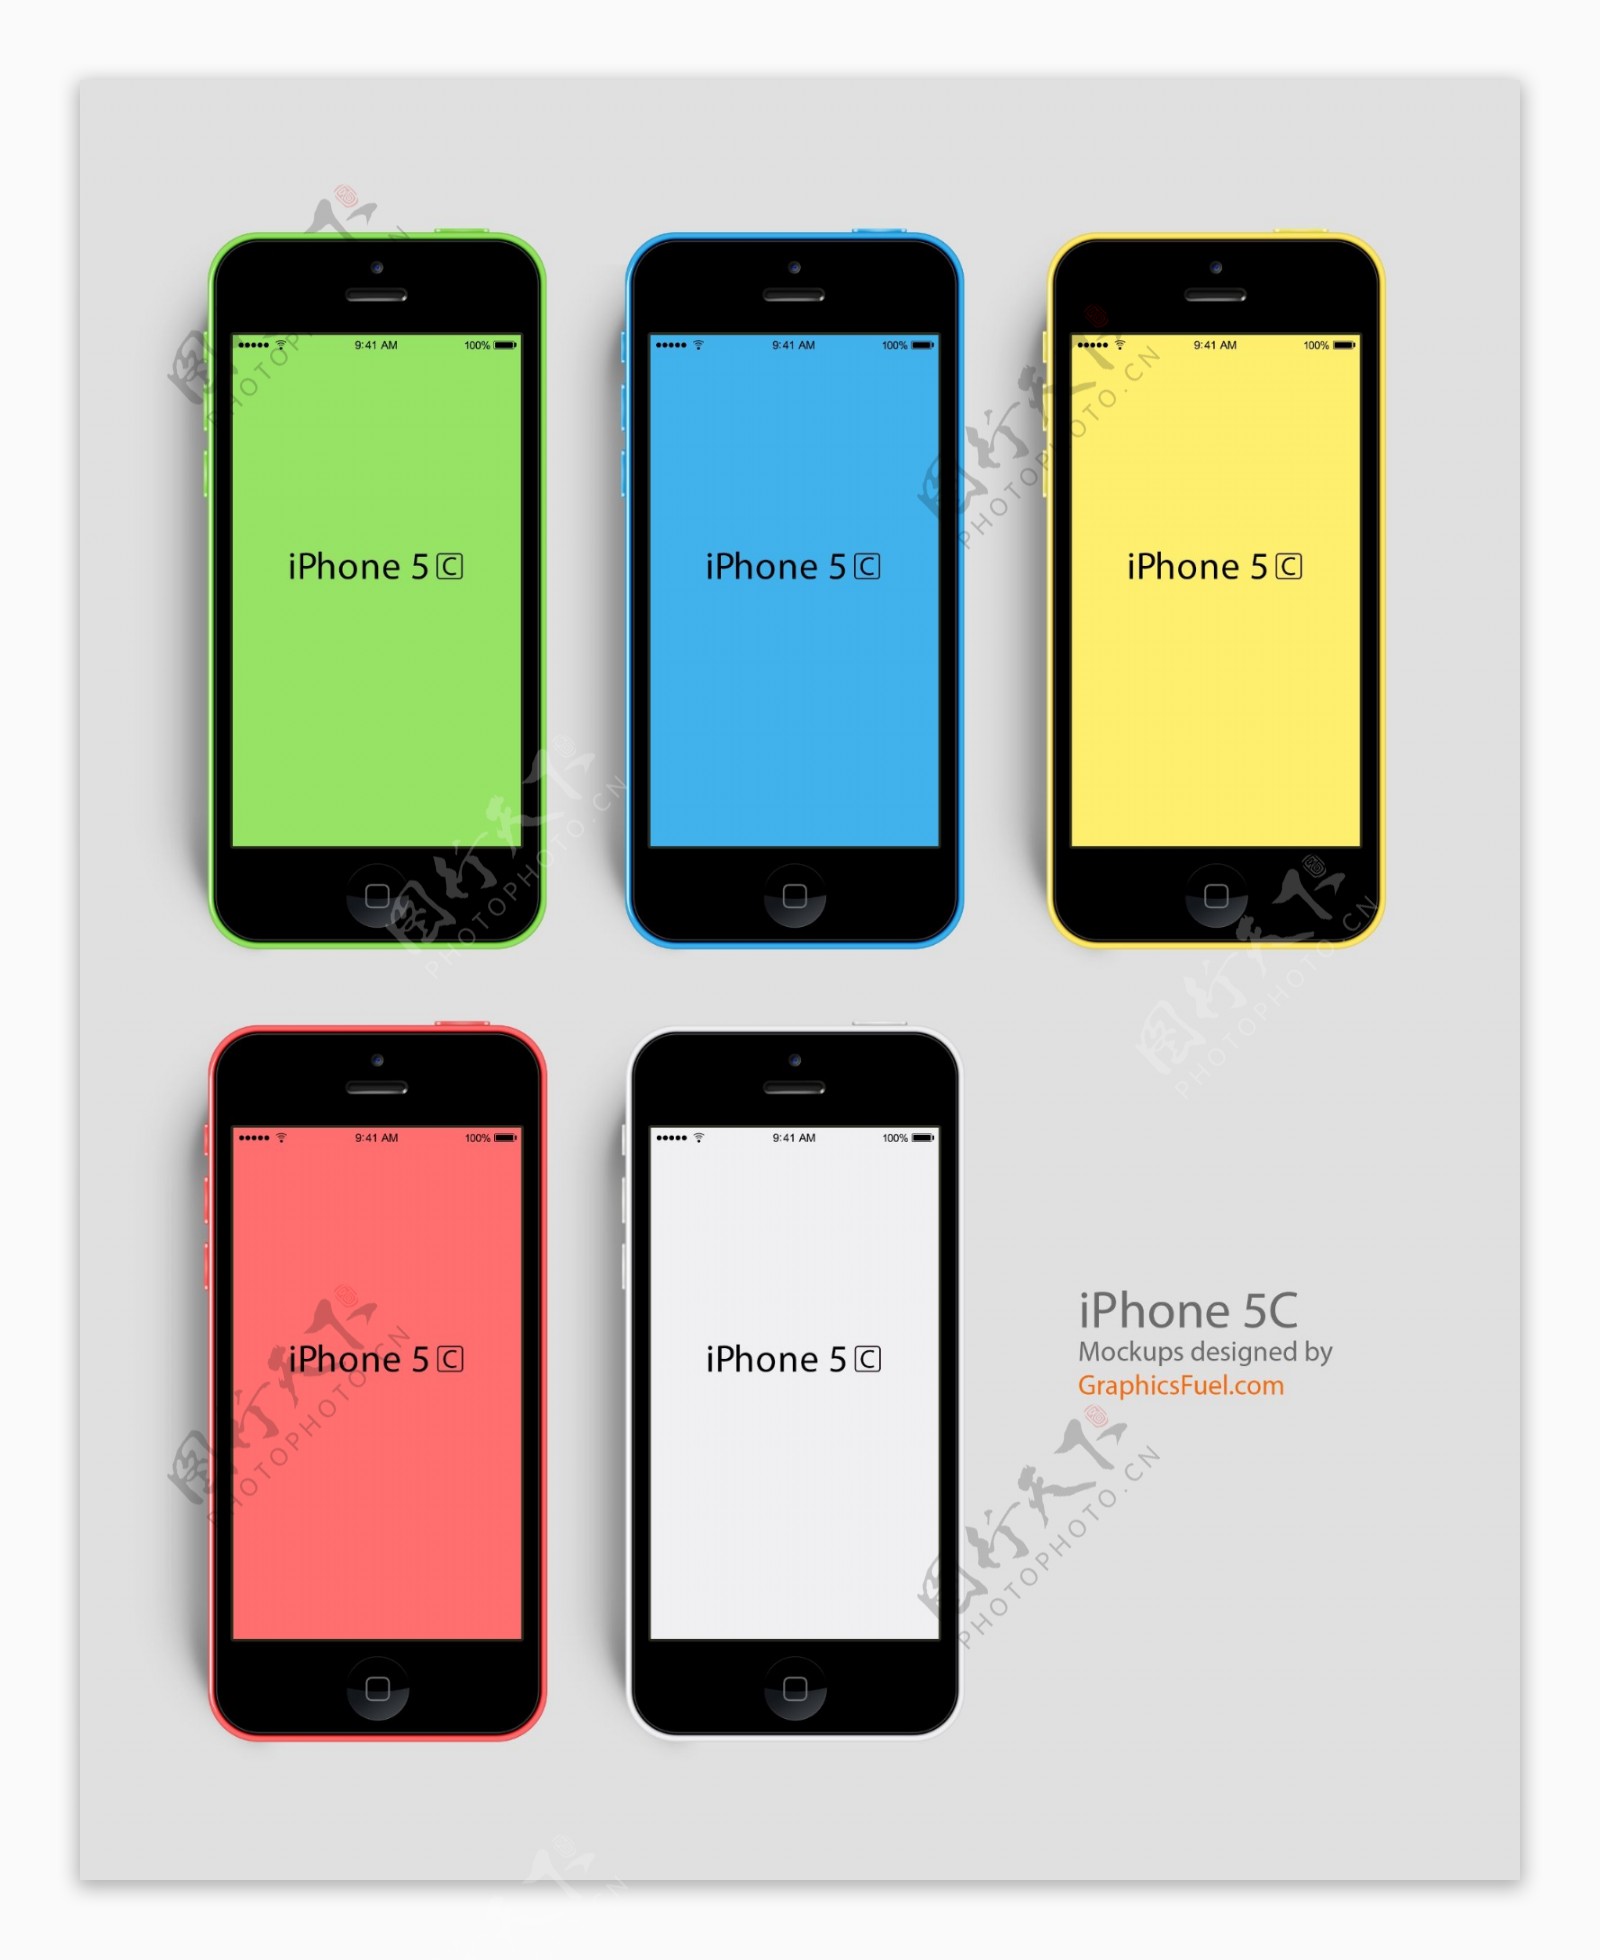 iphone界面设计图片